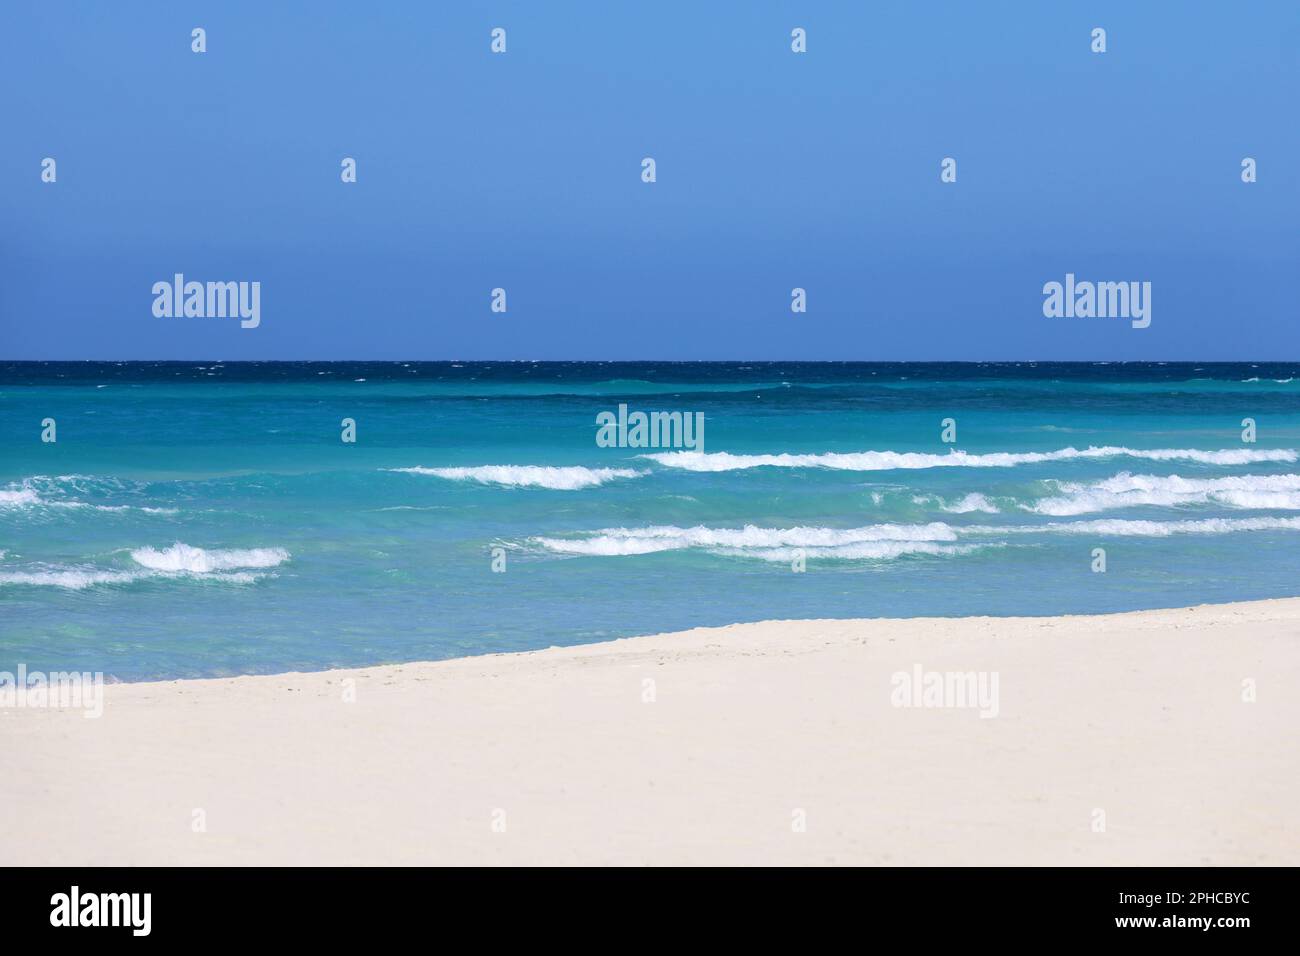 Plage de mer vide avec sable blanc, vue sur les vagues d'azur et le ciel bleu. Côte des Caraïbes, arrière-plan pour des vacances sur une nature paradisiaque Banque D'Images